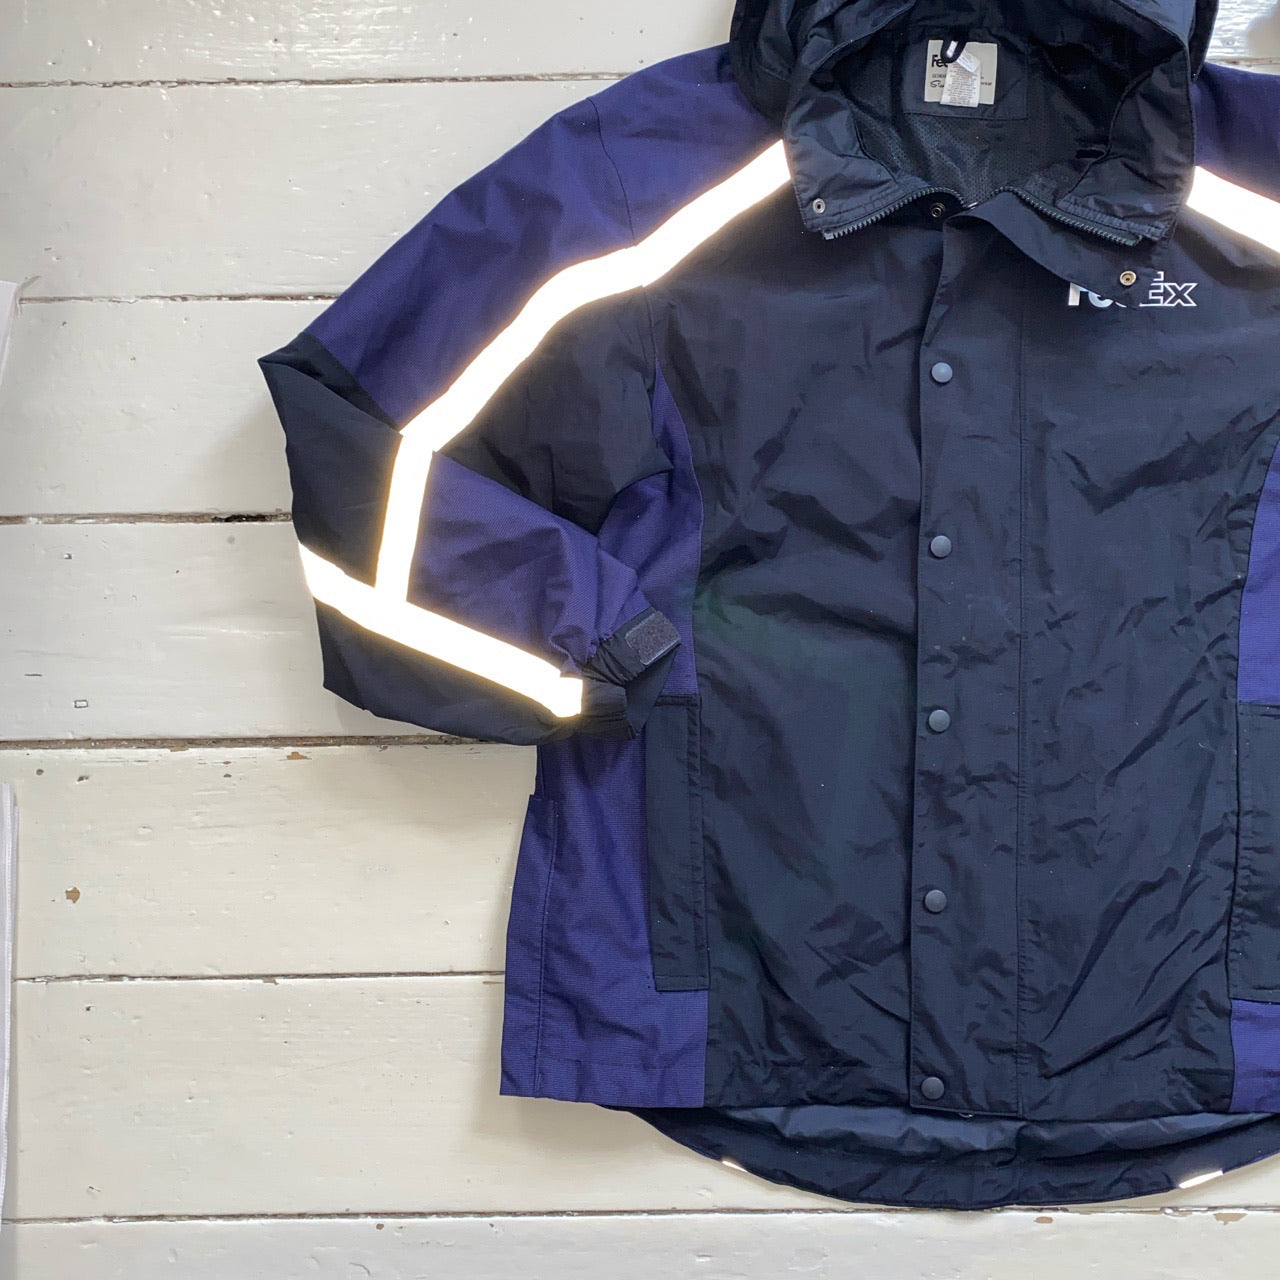 Fedex Windbreaker Reflective Jacket (Large)